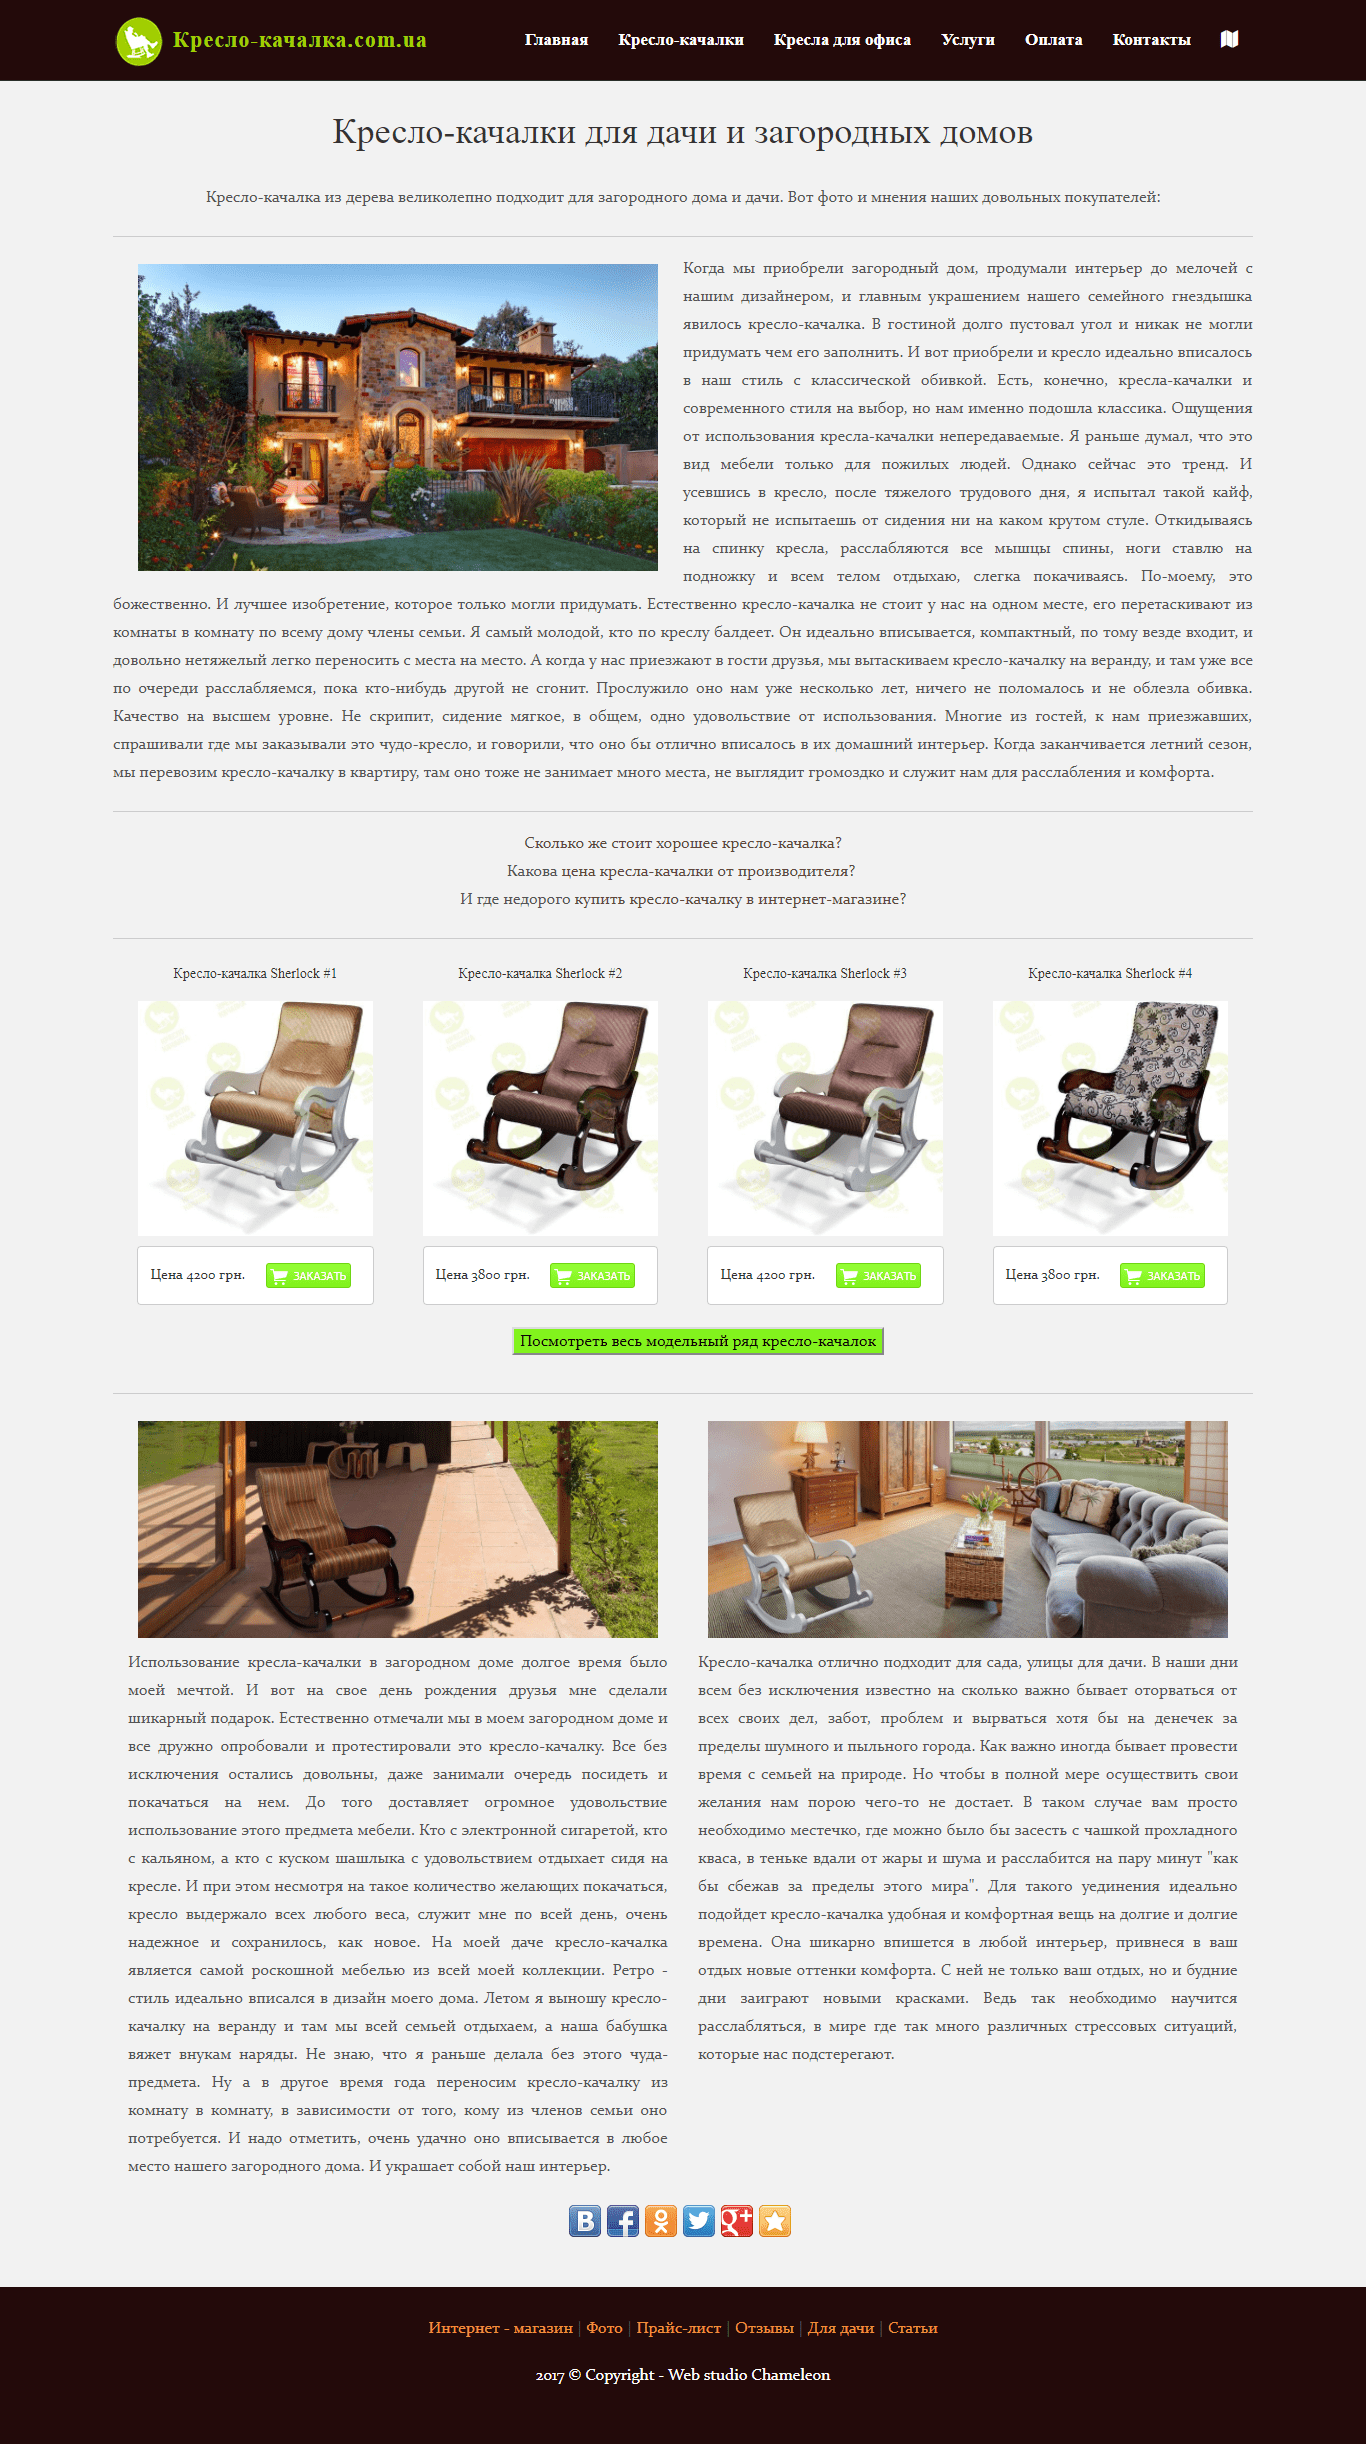 Пример мультилендинга по продаже мебели кресло-качалка.com.ua